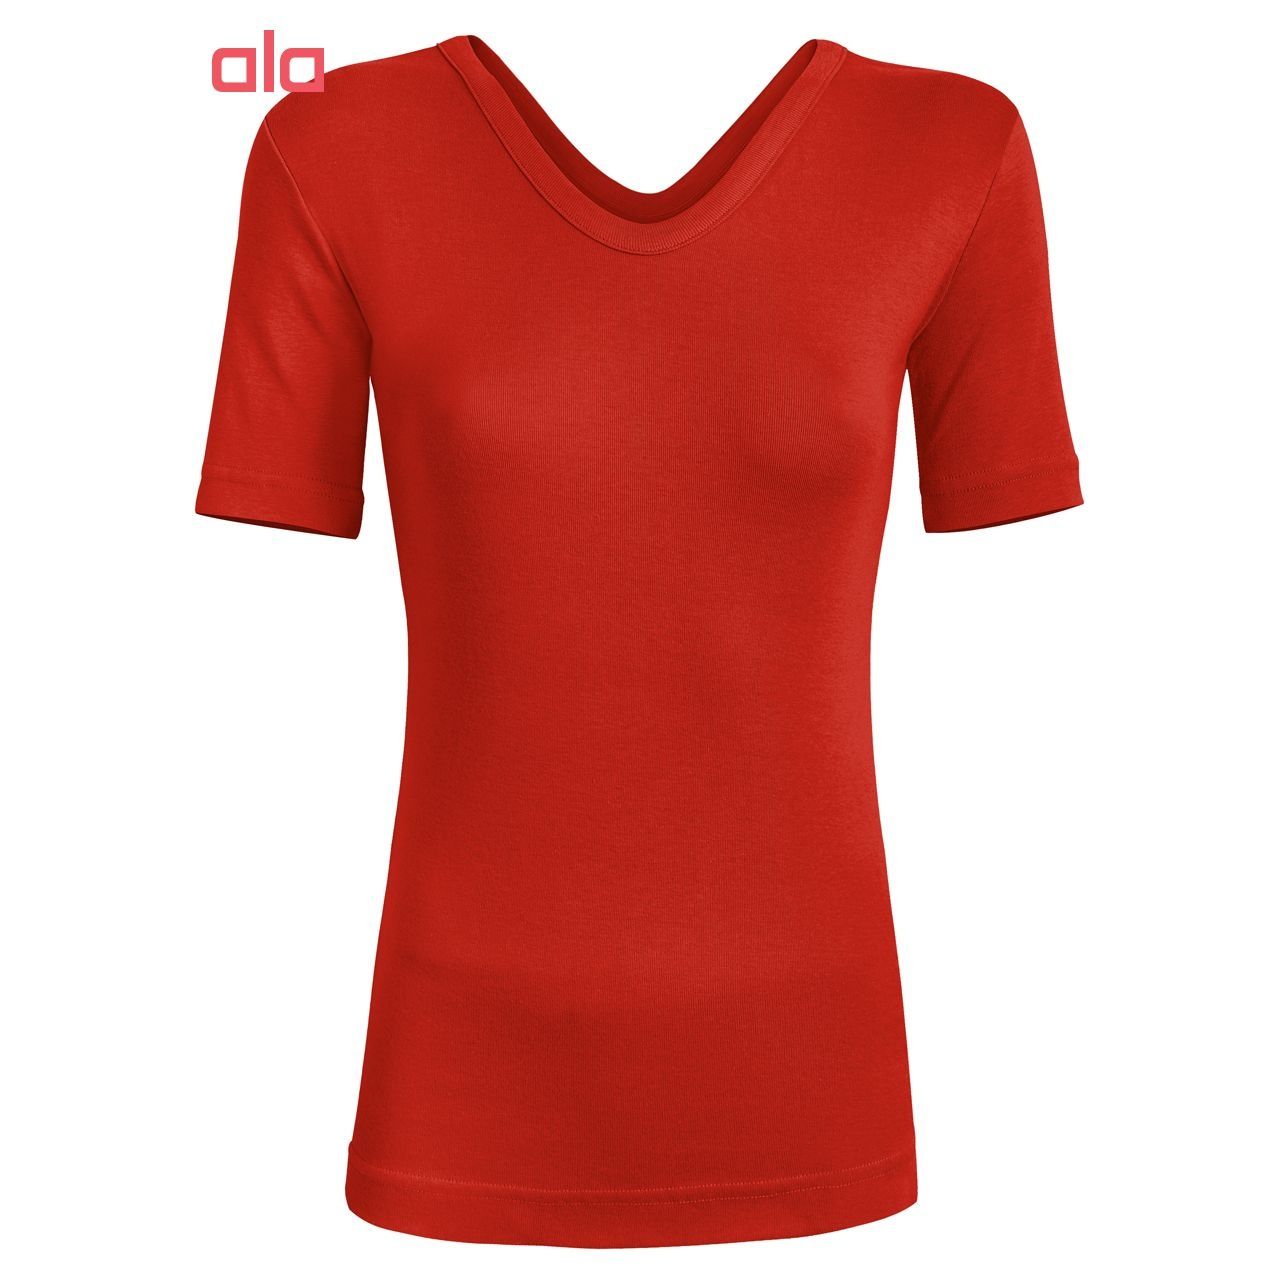 تی شرت زنانه ساروک مدل TZYVFPB03 رنگ قرمز -  - 2